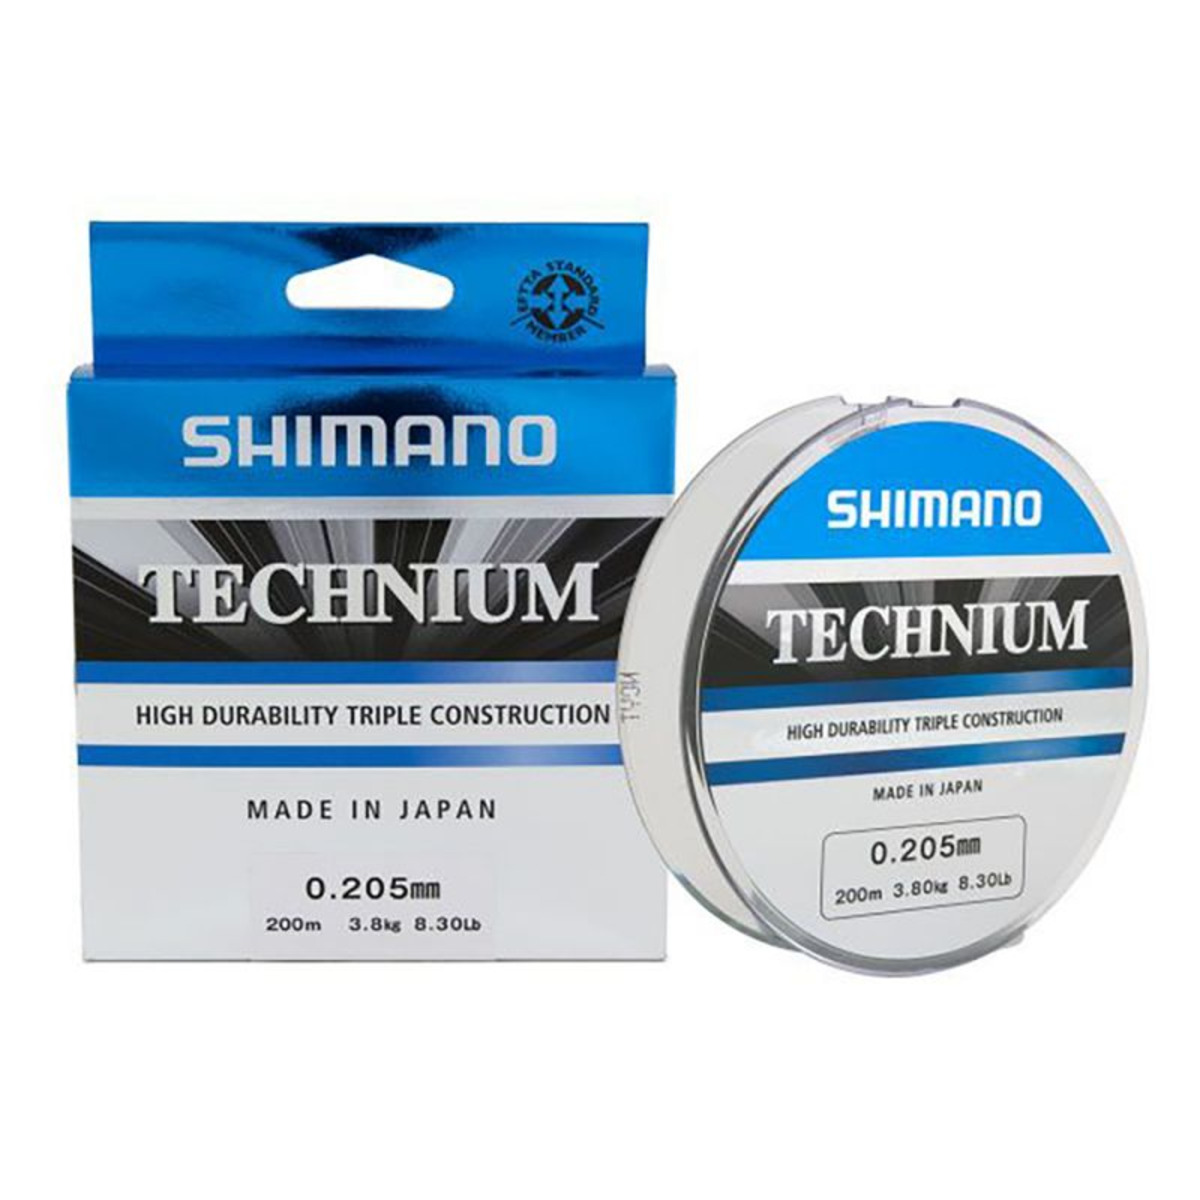 Shimano Technium 200 m - 200 m - 0.185 mm